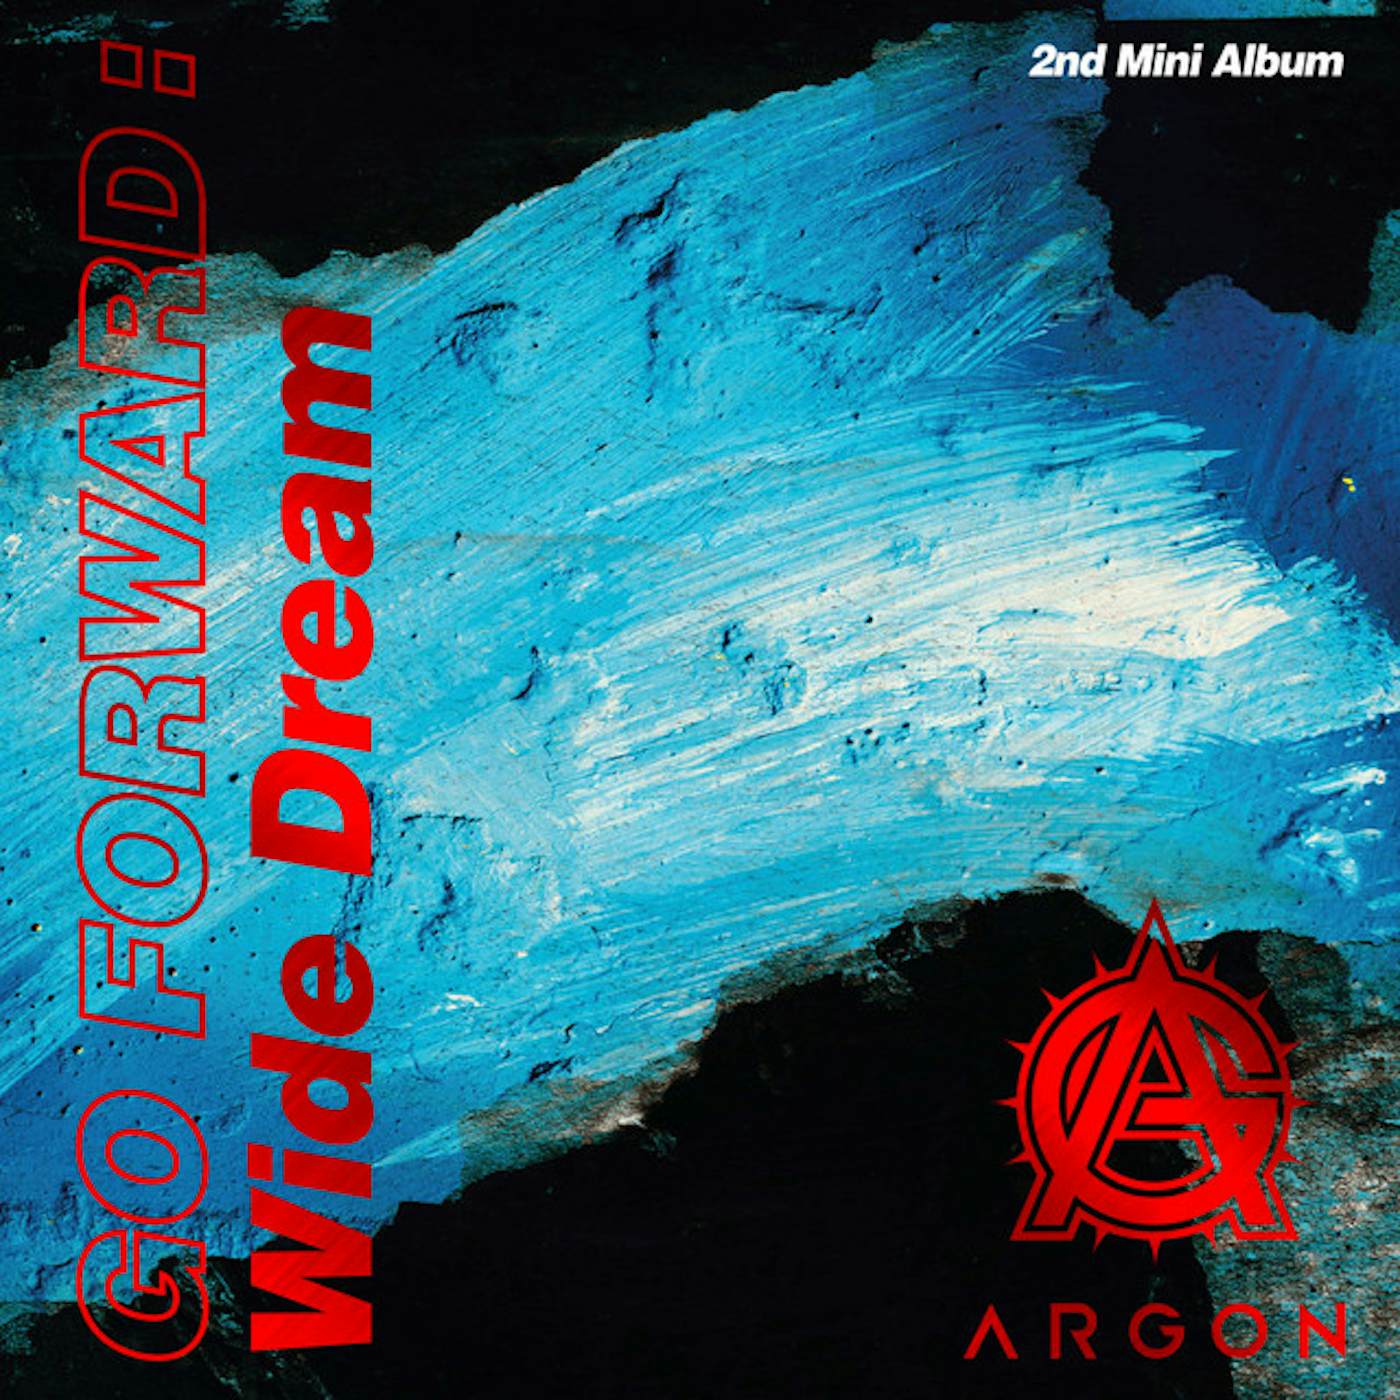 ARGON GO FORWARD: WIDE DREAM CD